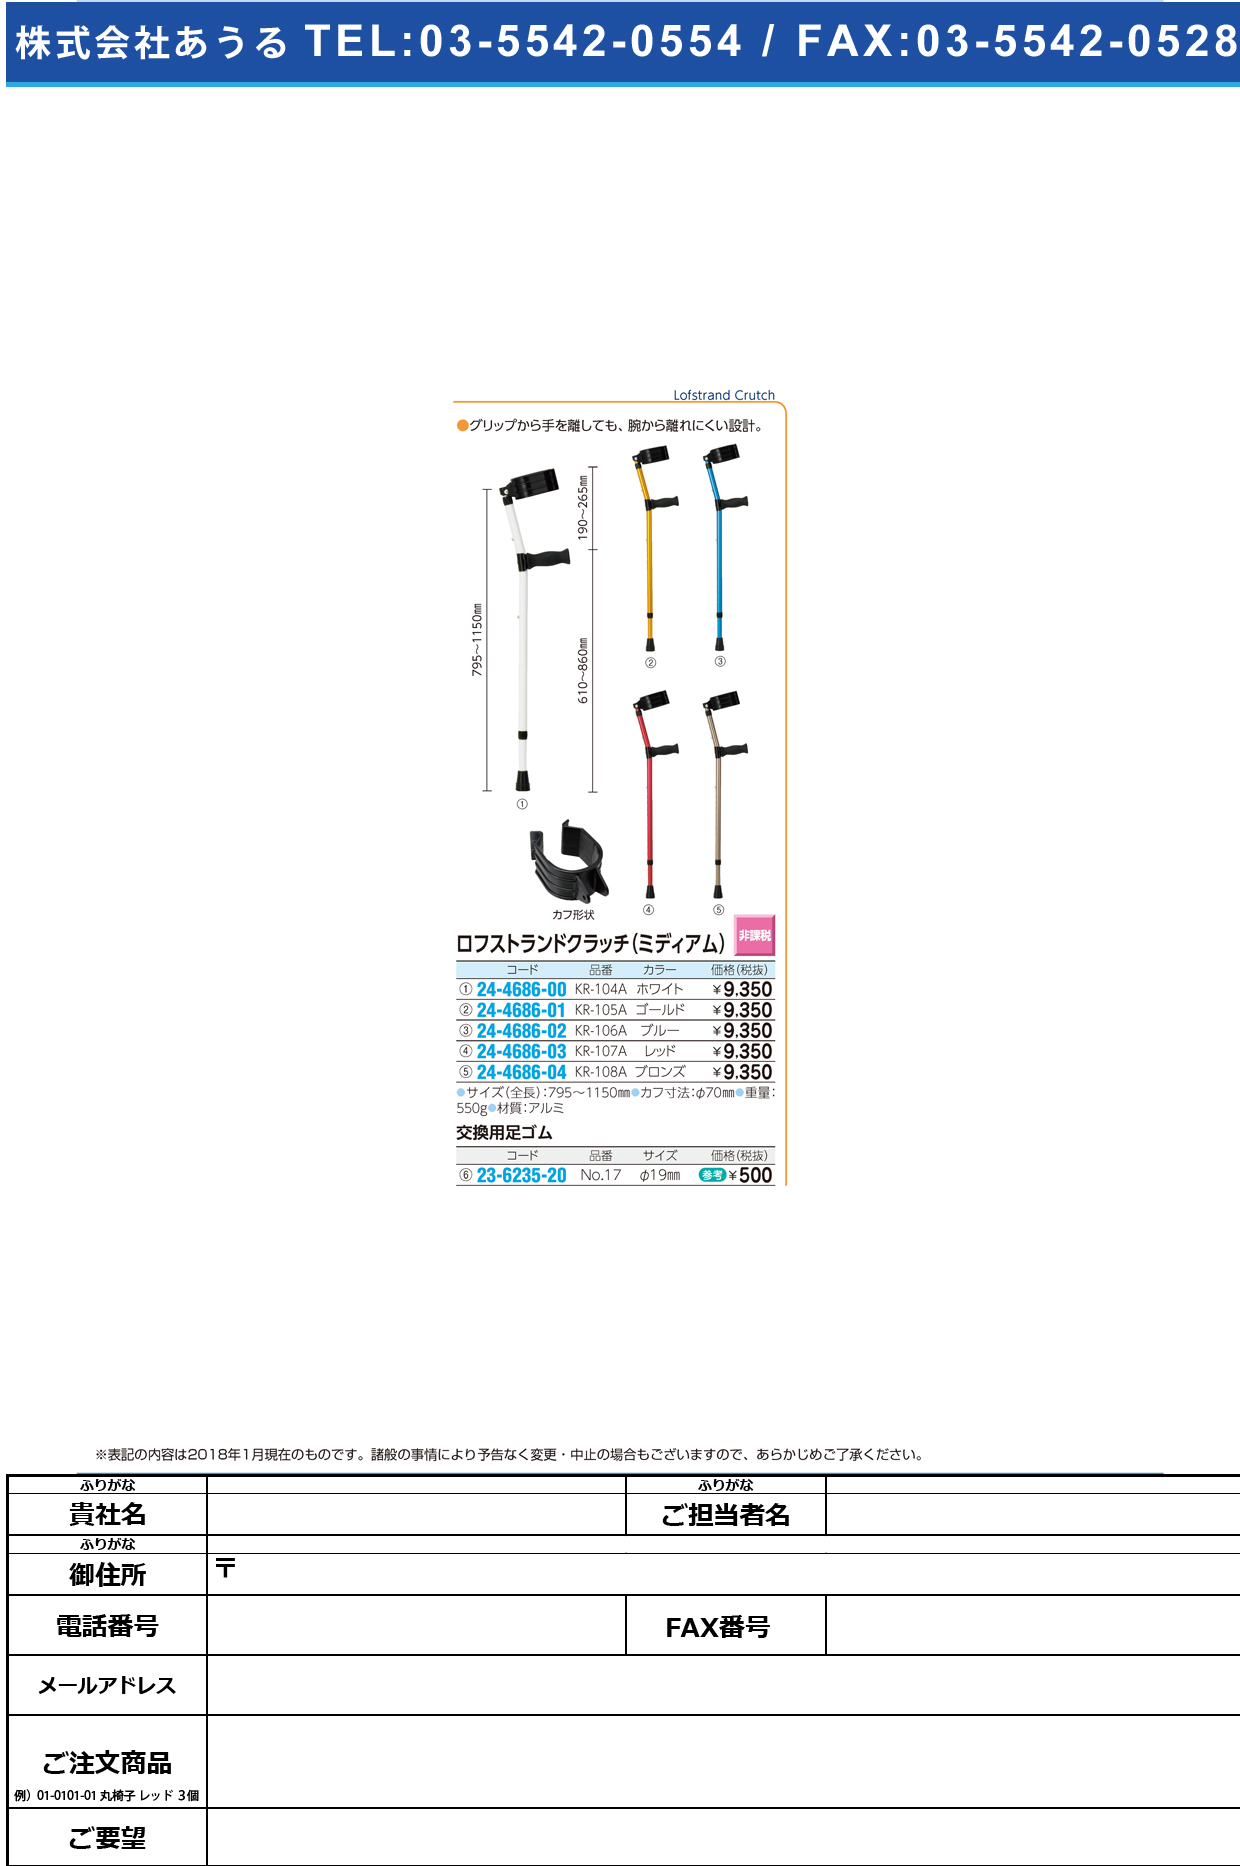 (24-4686-01)ロフストランドクラッチ（ミディアム） KR-105A(ｺﾞｰﾙﾄﾞ) ﾛﾌｽﾄﾗﾝﾄﾞｸﾗｯﾁ【1本単位】【2019年カタログ商品】